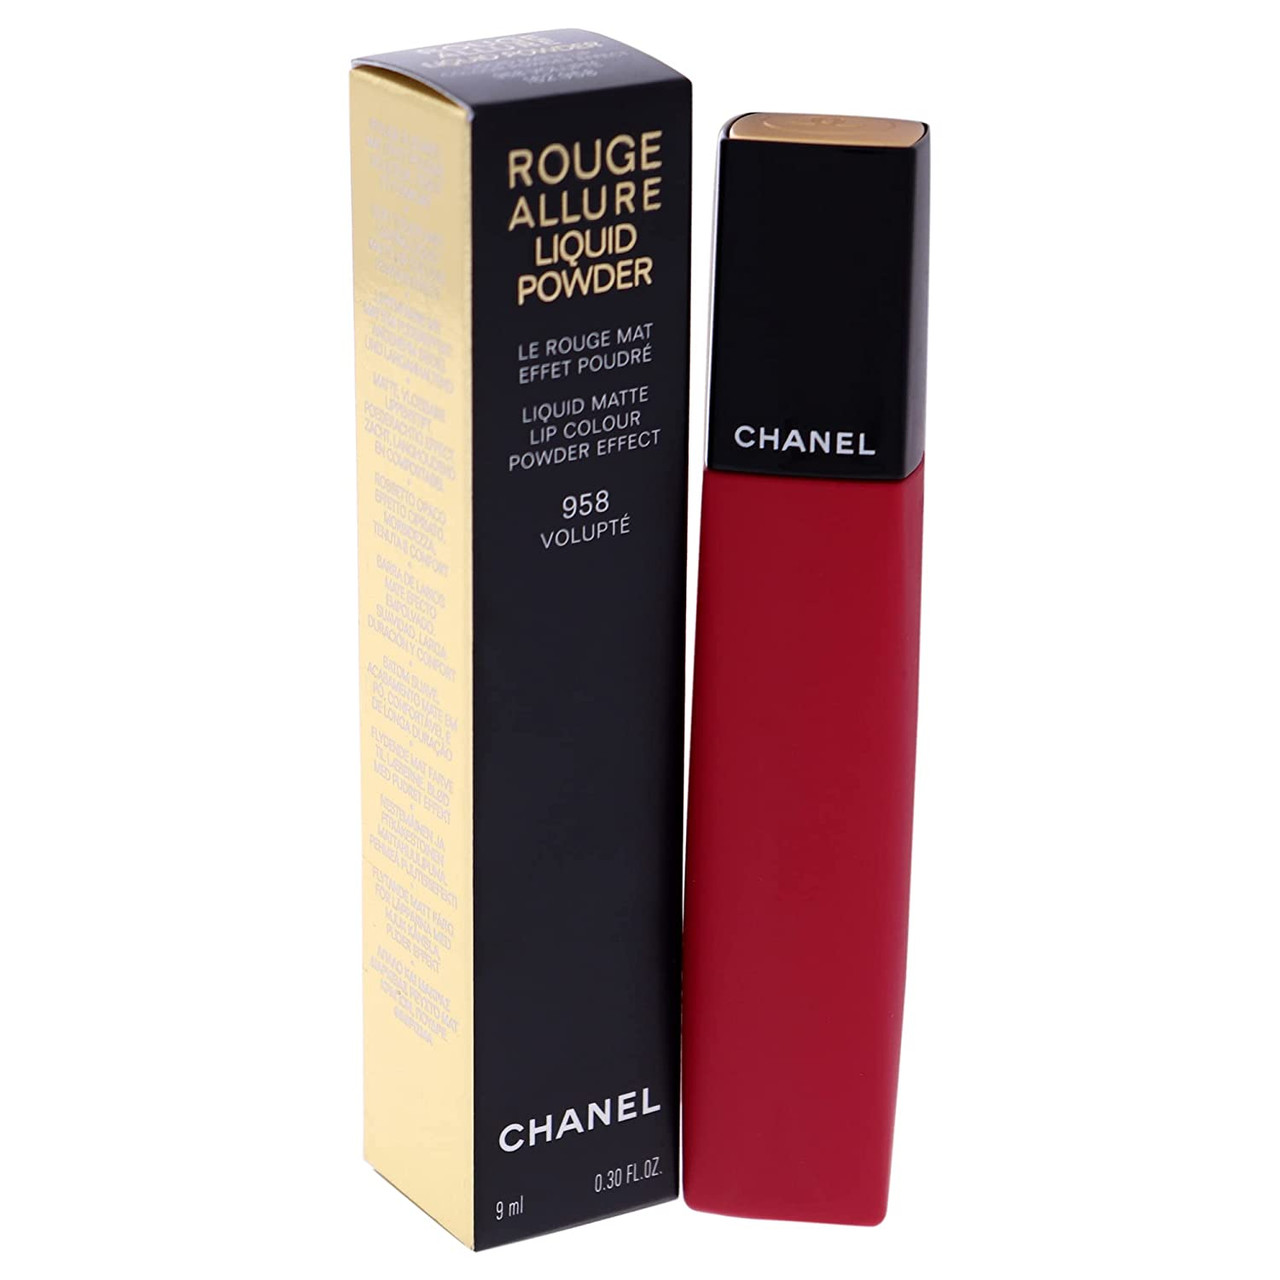 Chanel Rouge Allure Liquid Powder - 958 Volupte Women Lipstick 0.3 oz